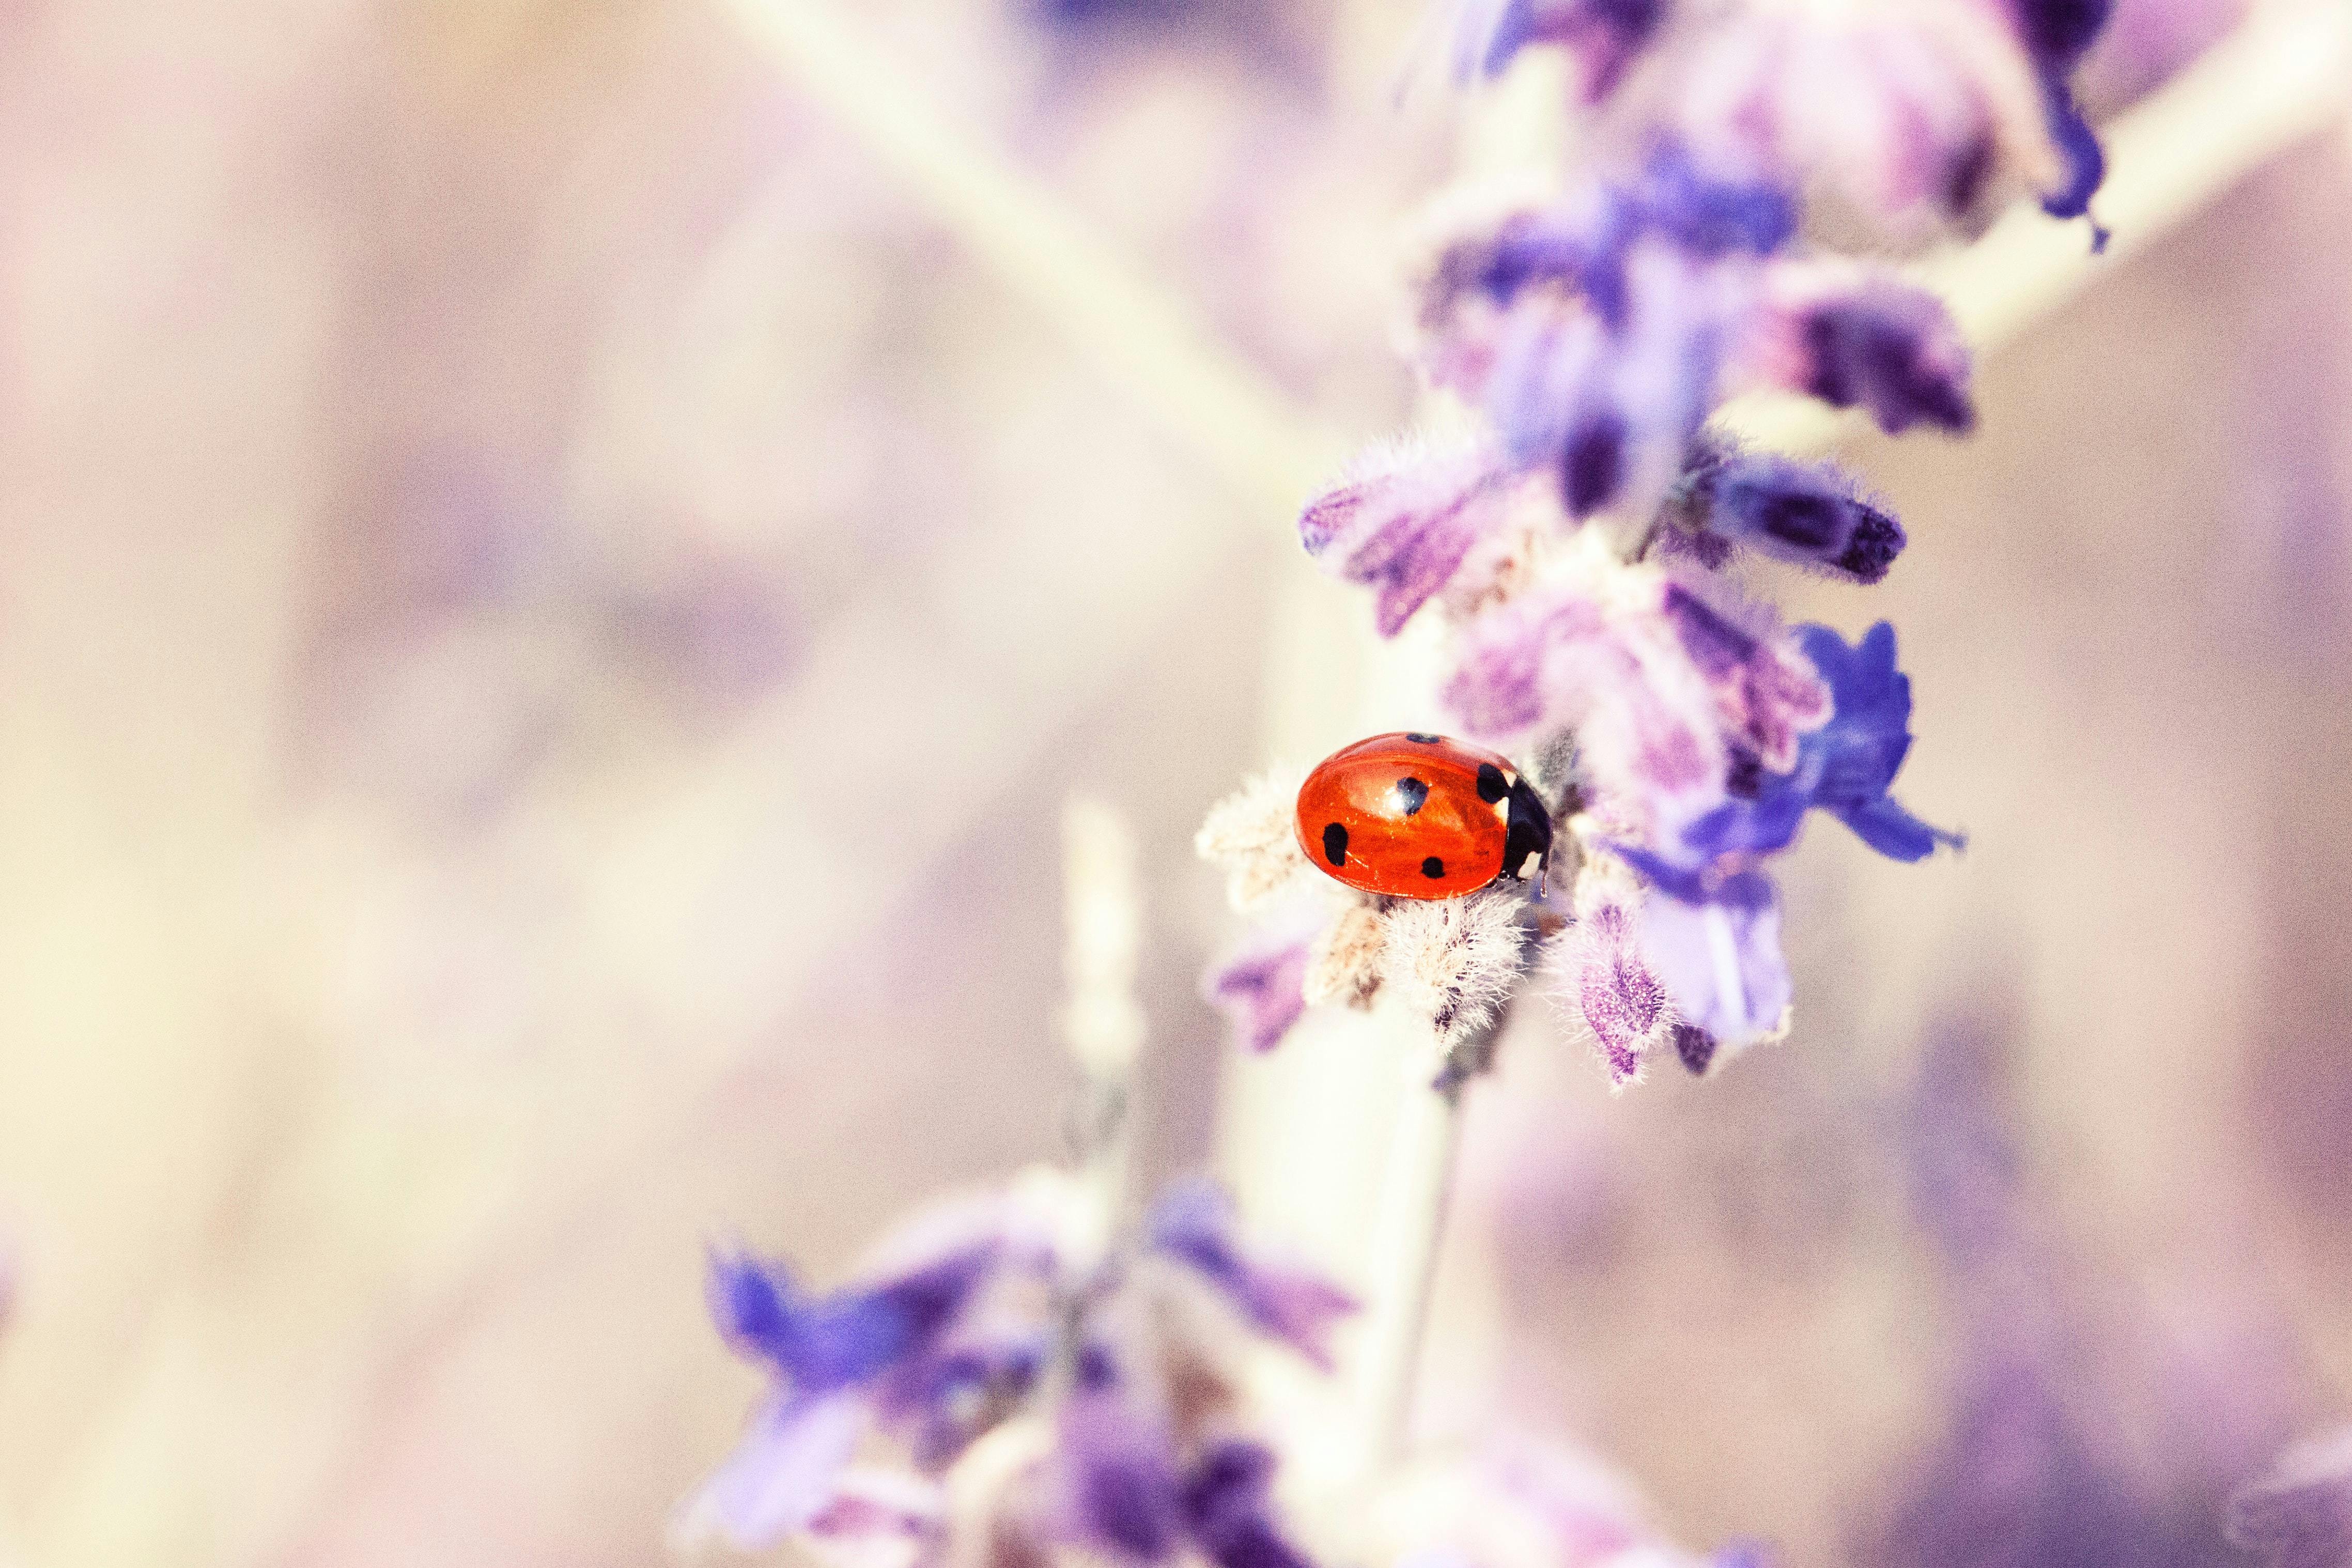 Ladybug on salvia